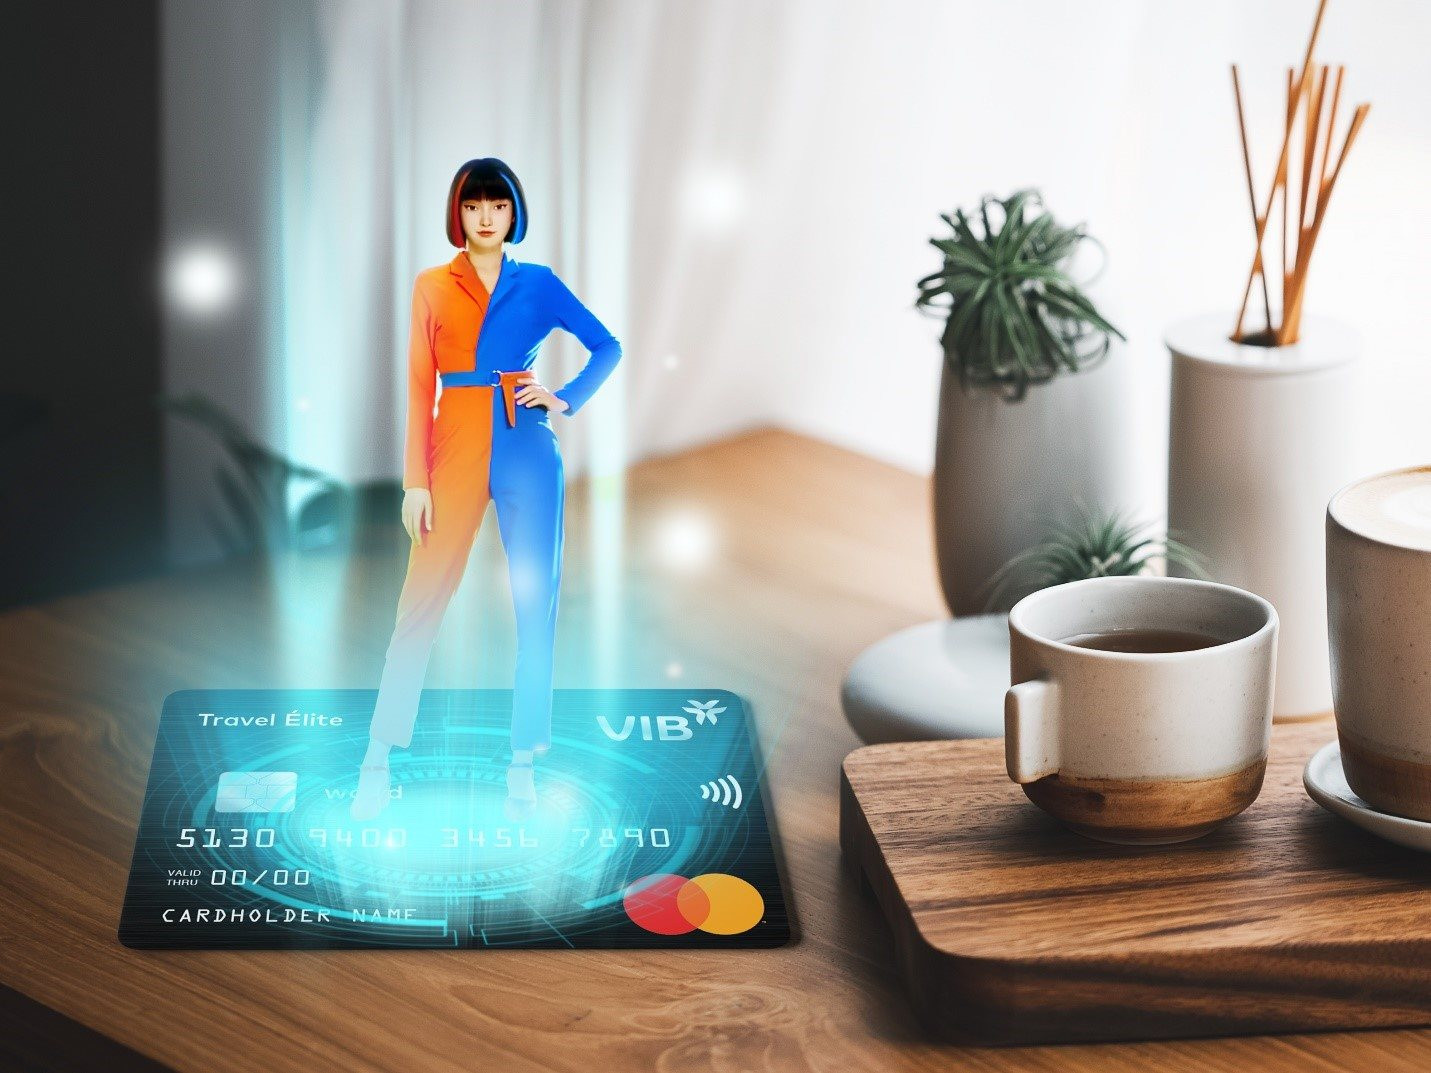 VIB dẫn đầu thị trường thẻ tín dụng ở nhiều chỉ tiêu - Ảnh 2.